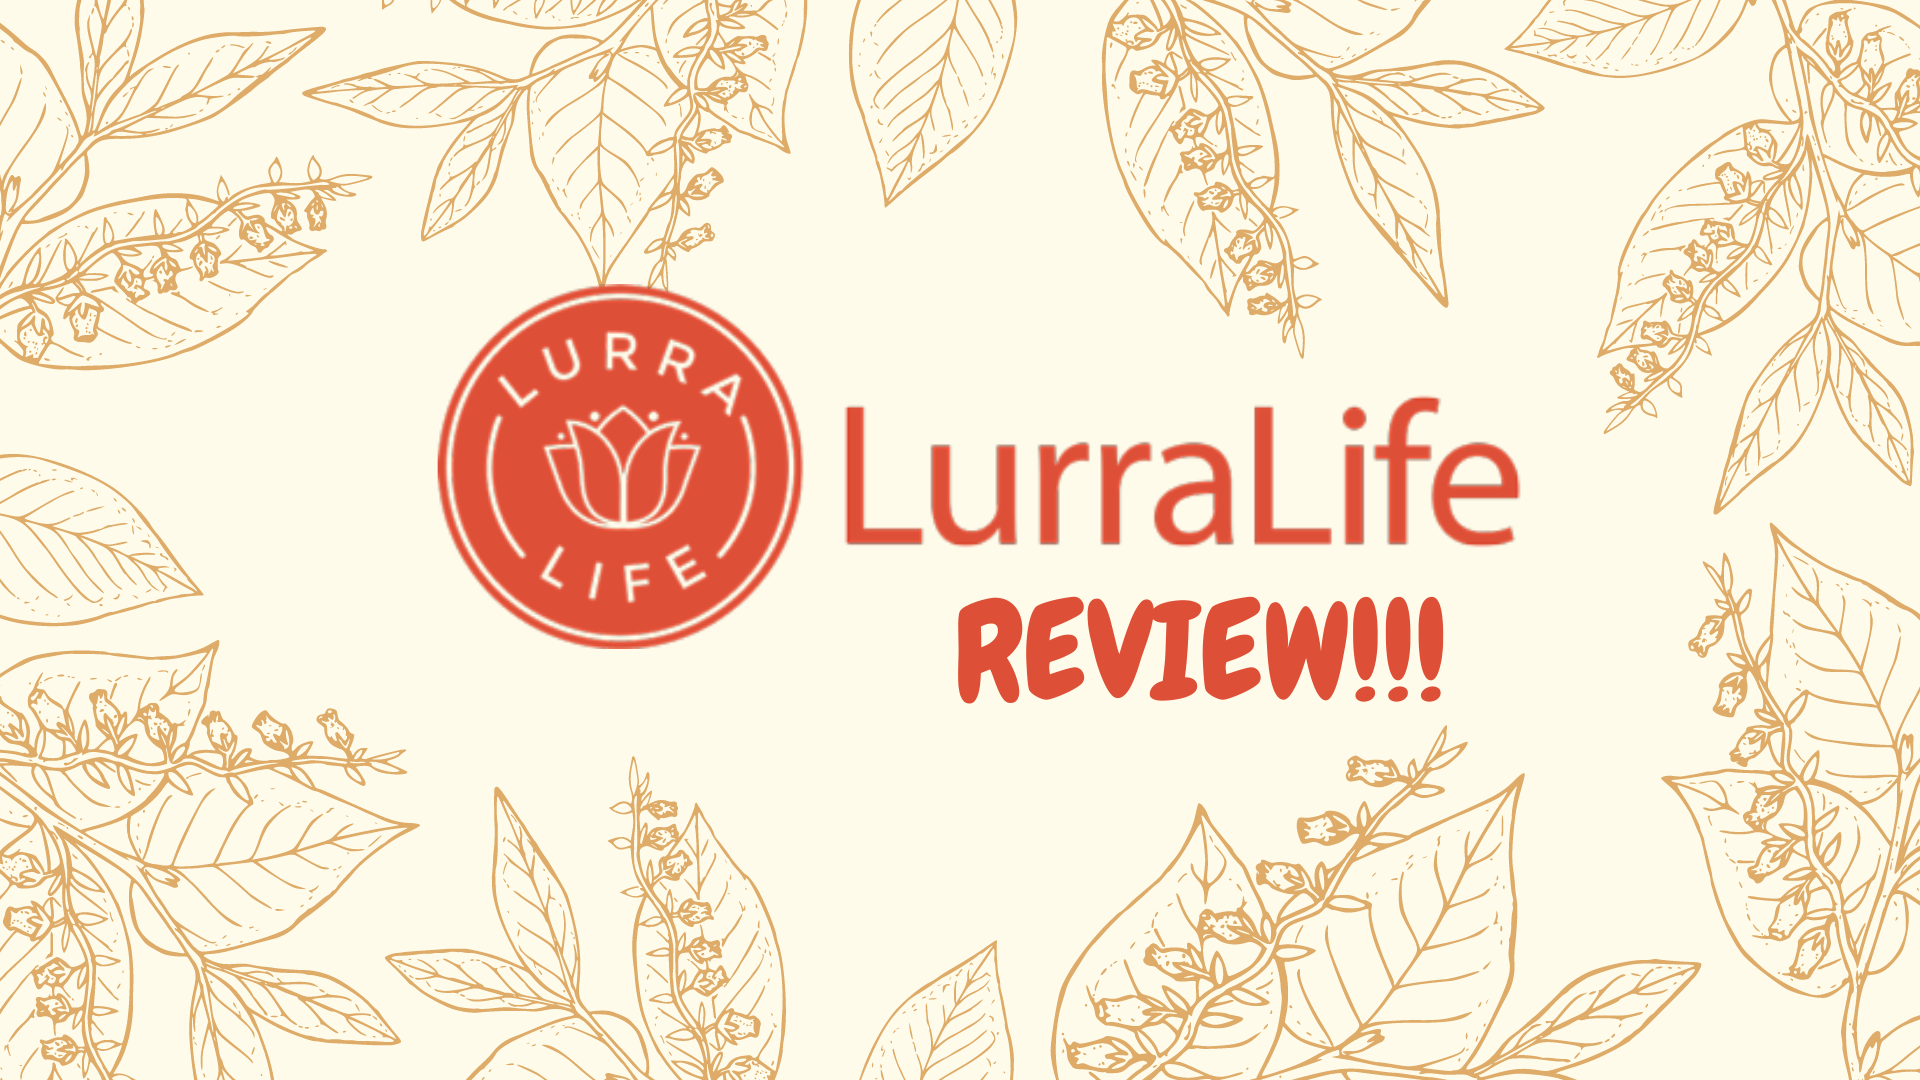 Lurralife review